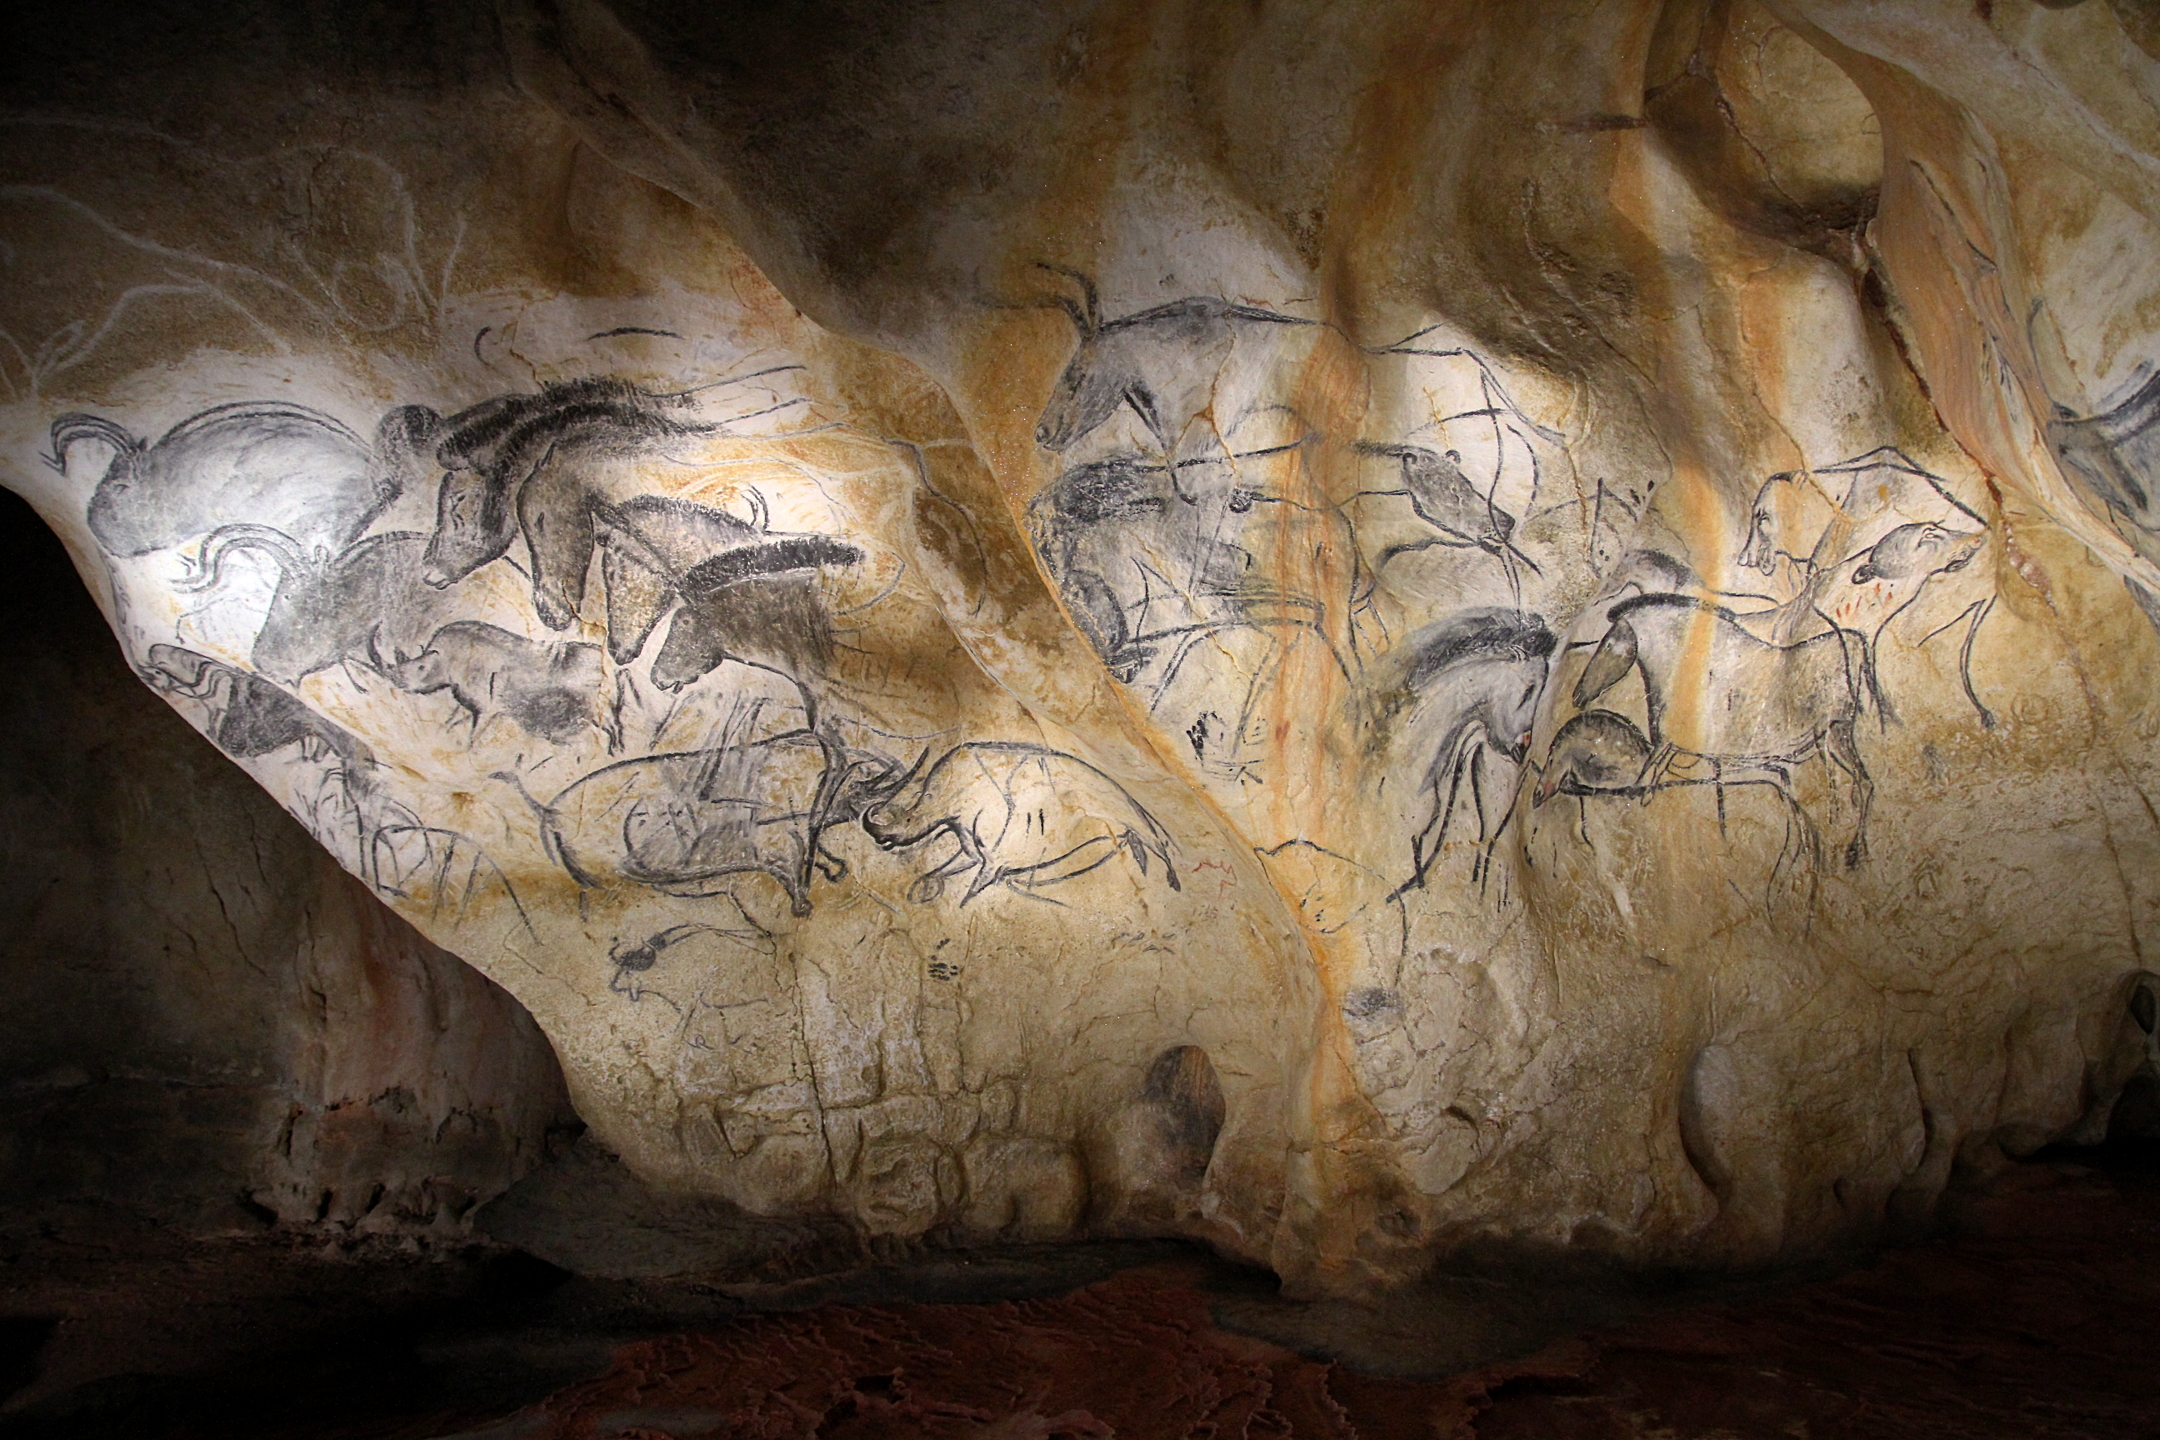 Chauvet Cave (Ardèdeche, France). Photo by Claude Valette, CC BY-ND 2.0.